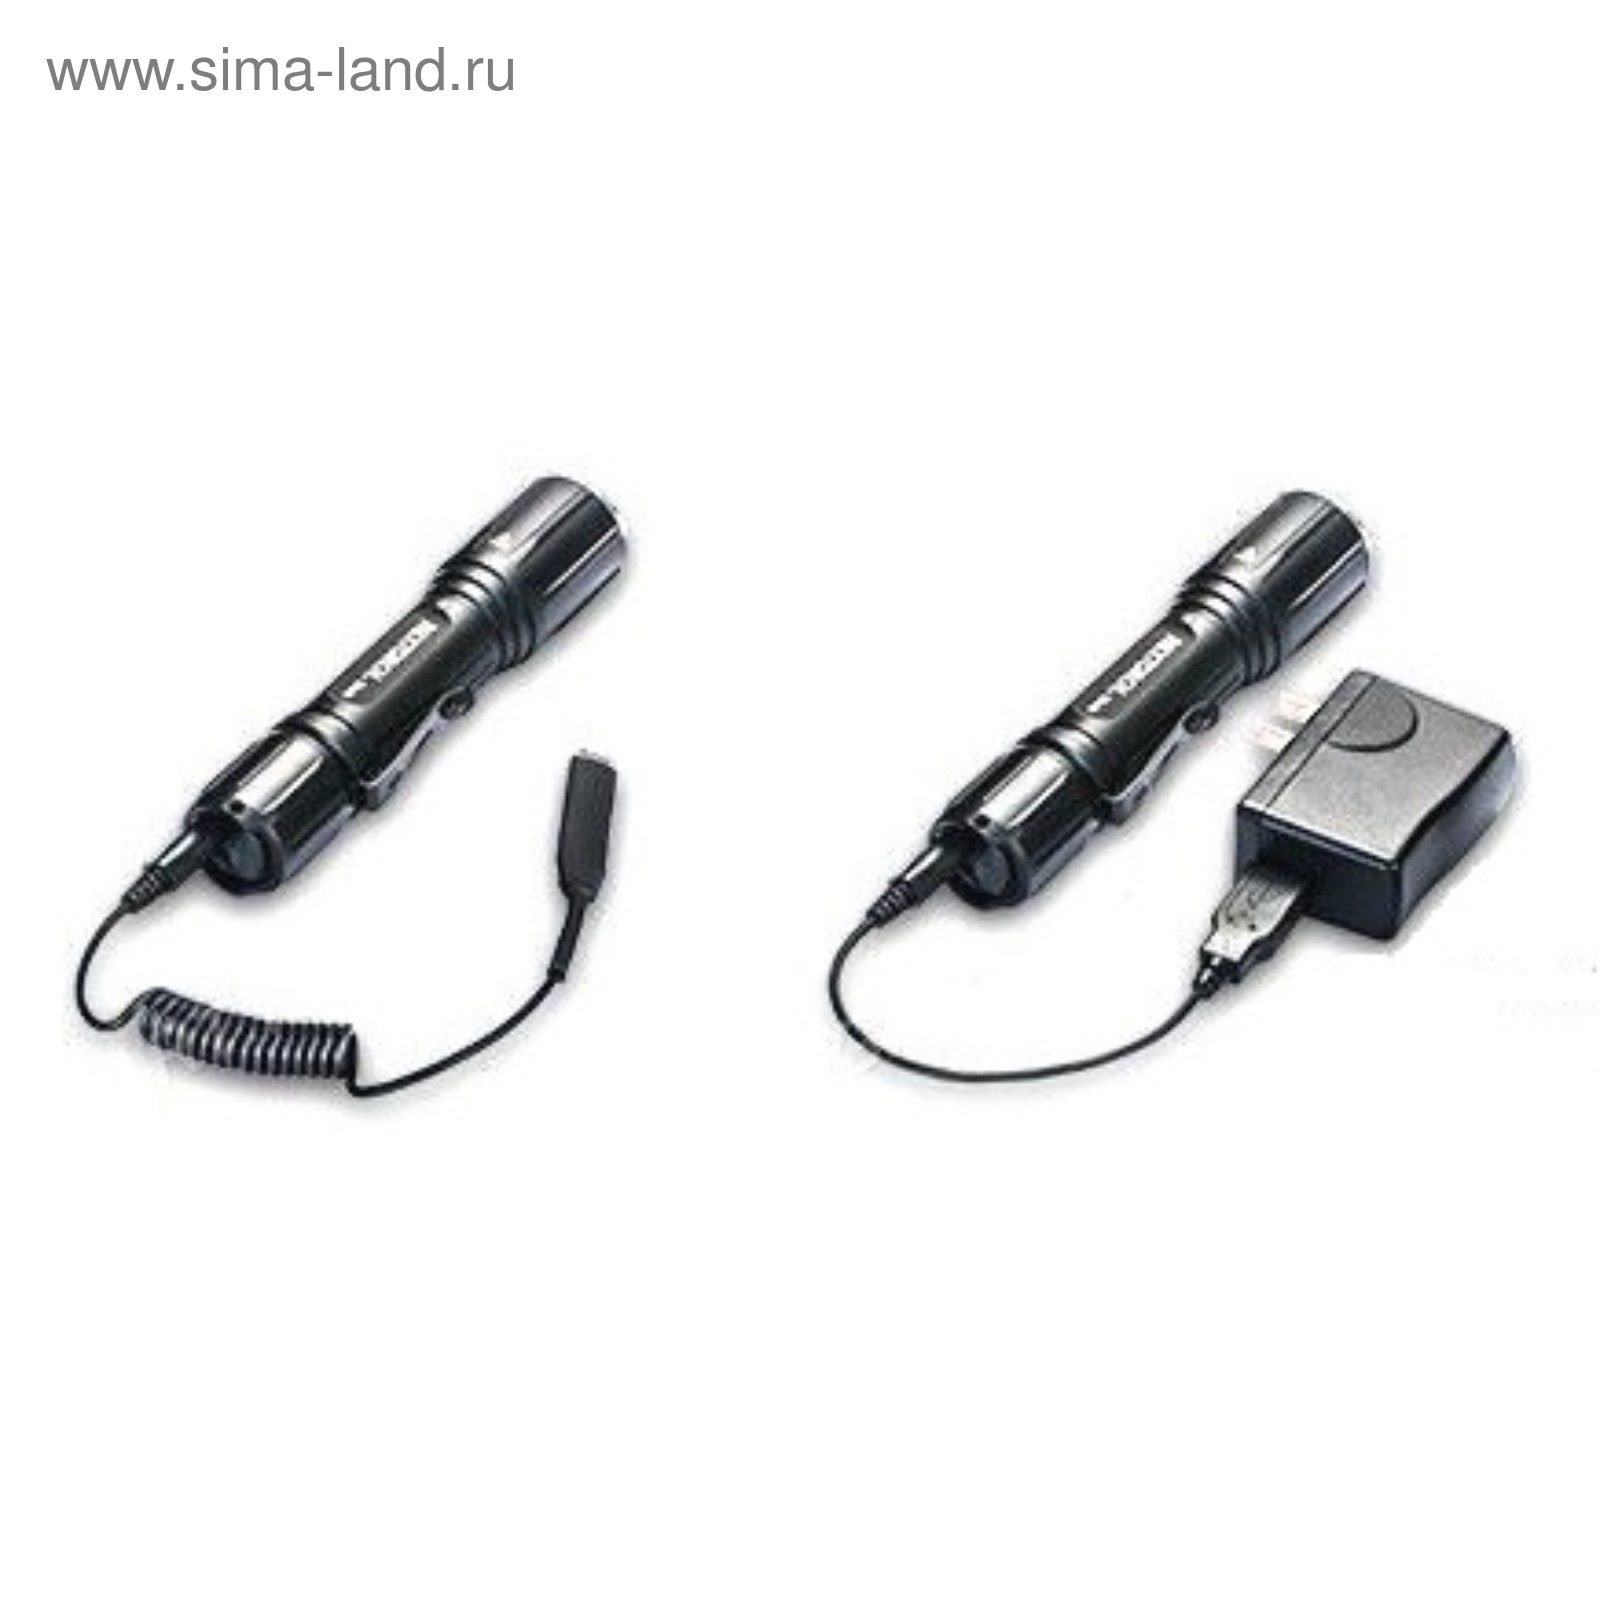 Фонарь аккумуляторный TA4 светодиодный 460 люмен, 7 режимов, клипса, + USB кабель